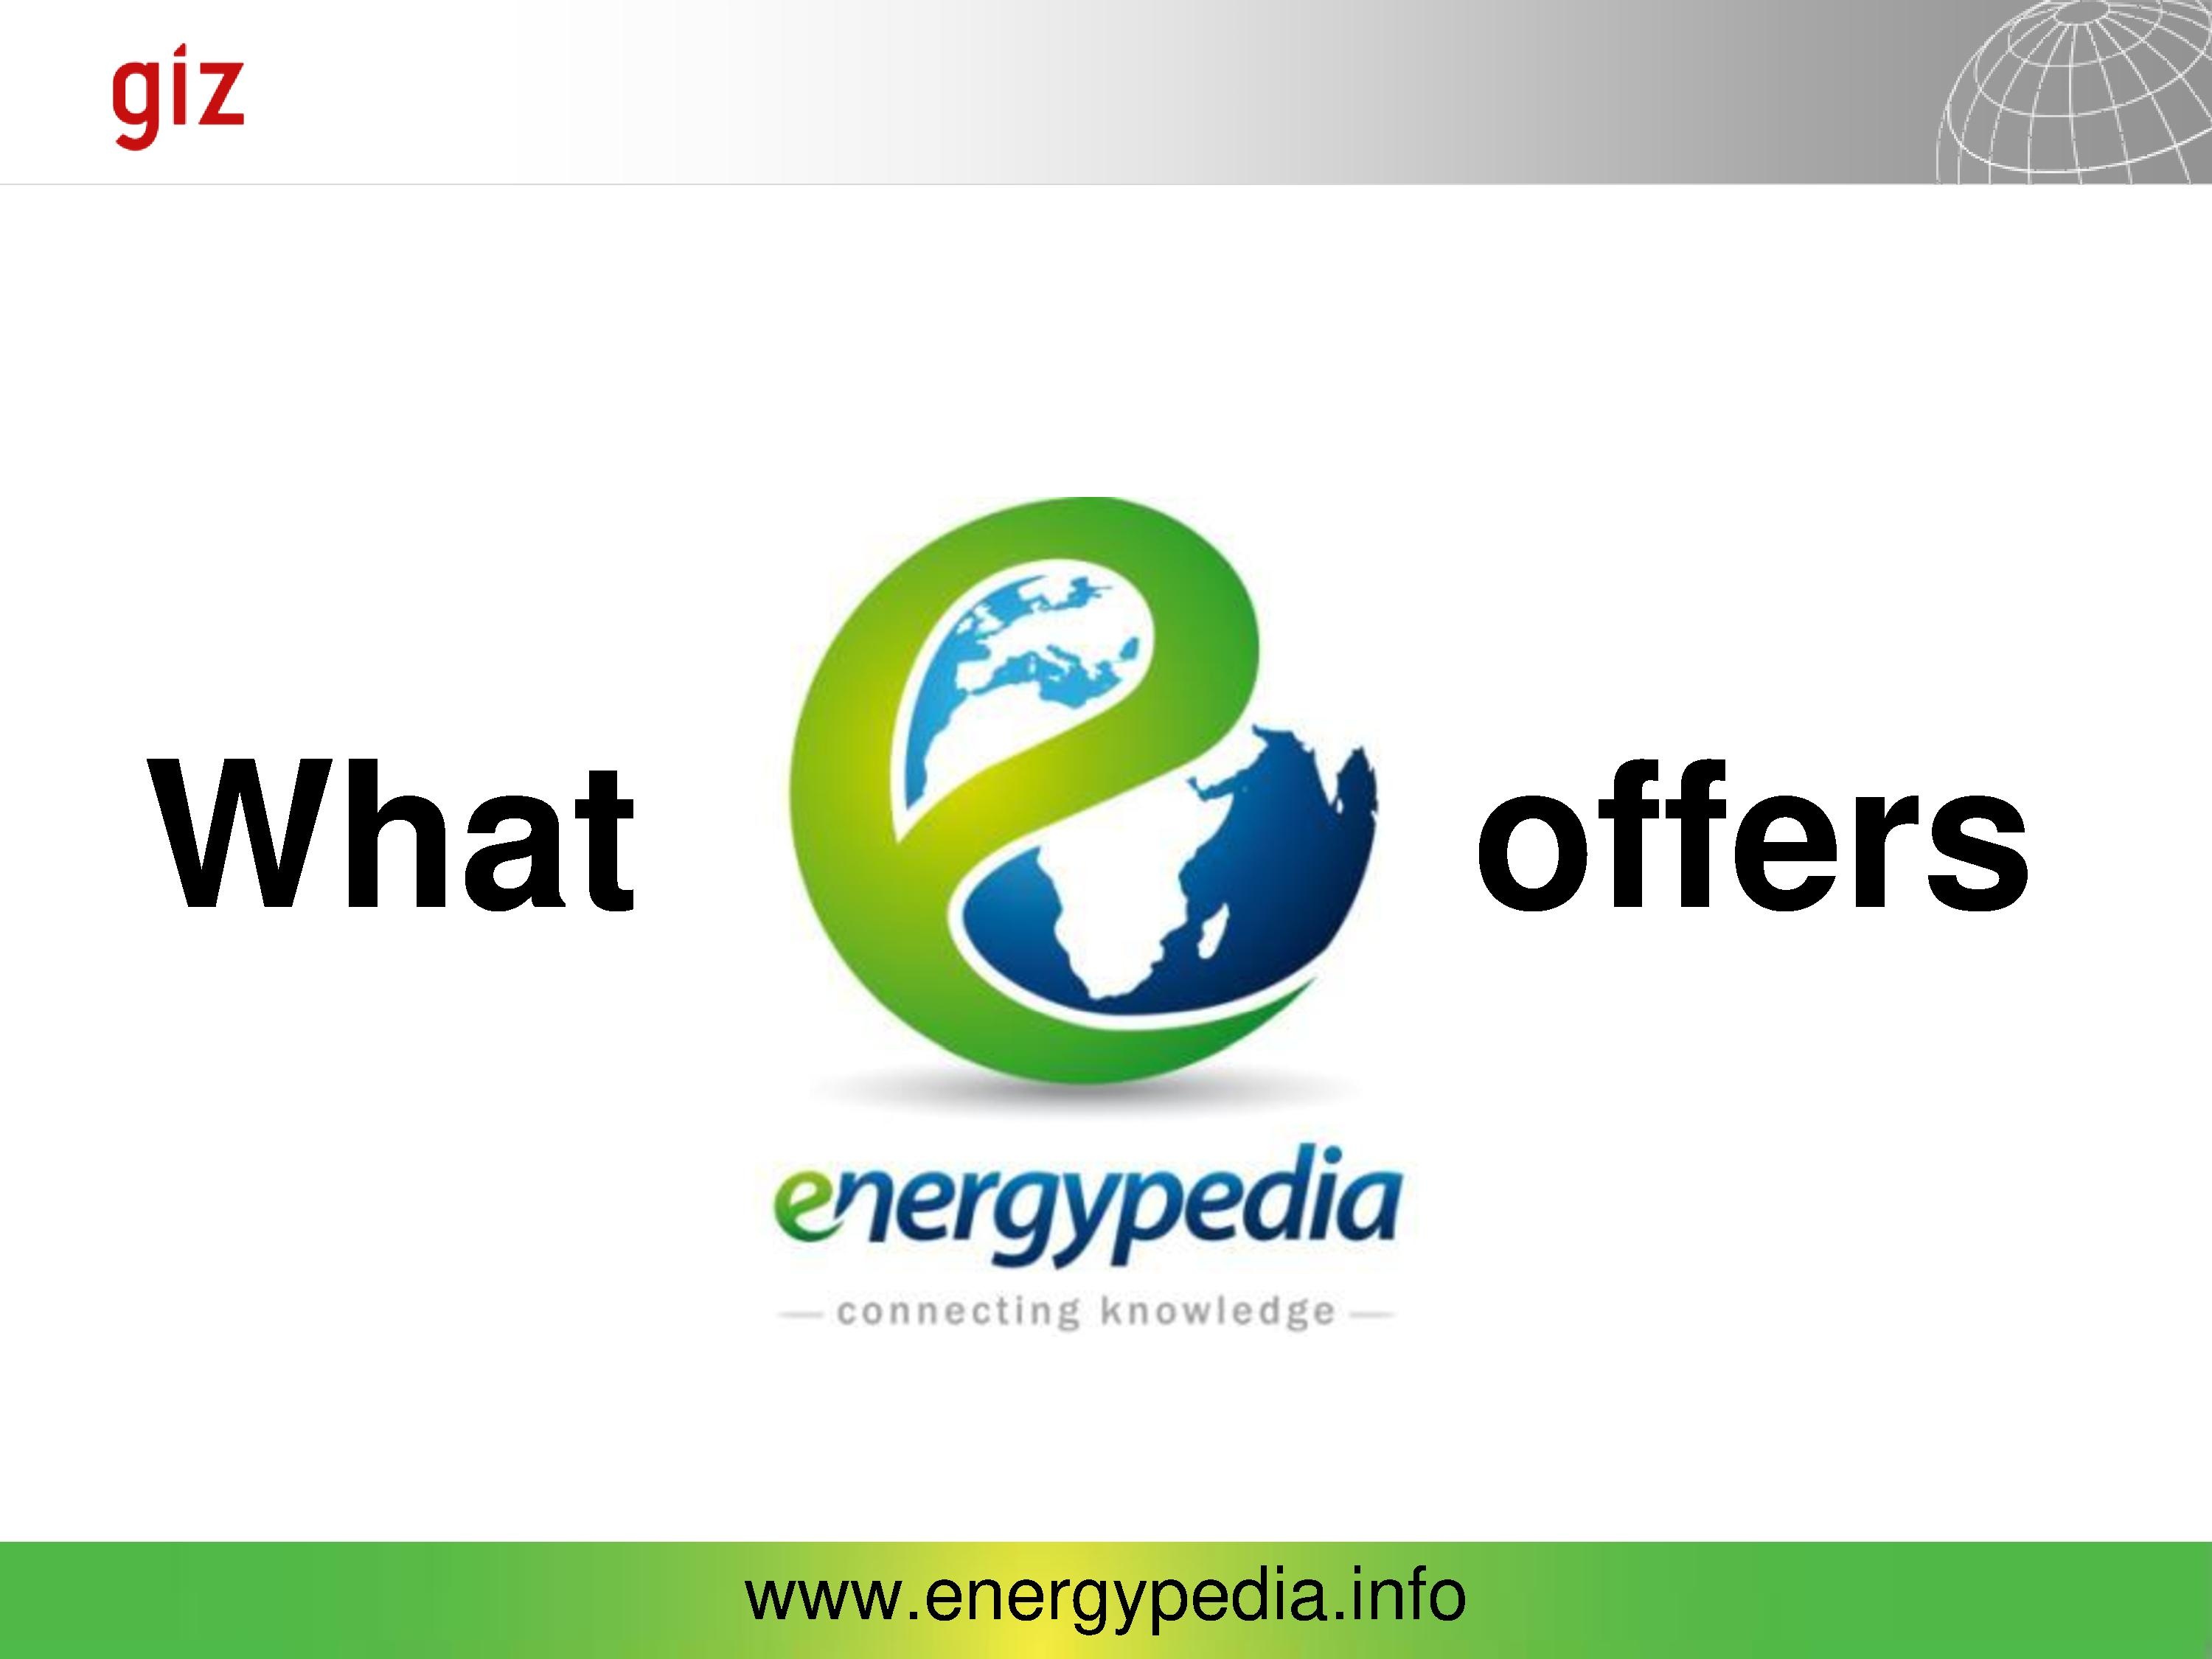 Energypedia functions